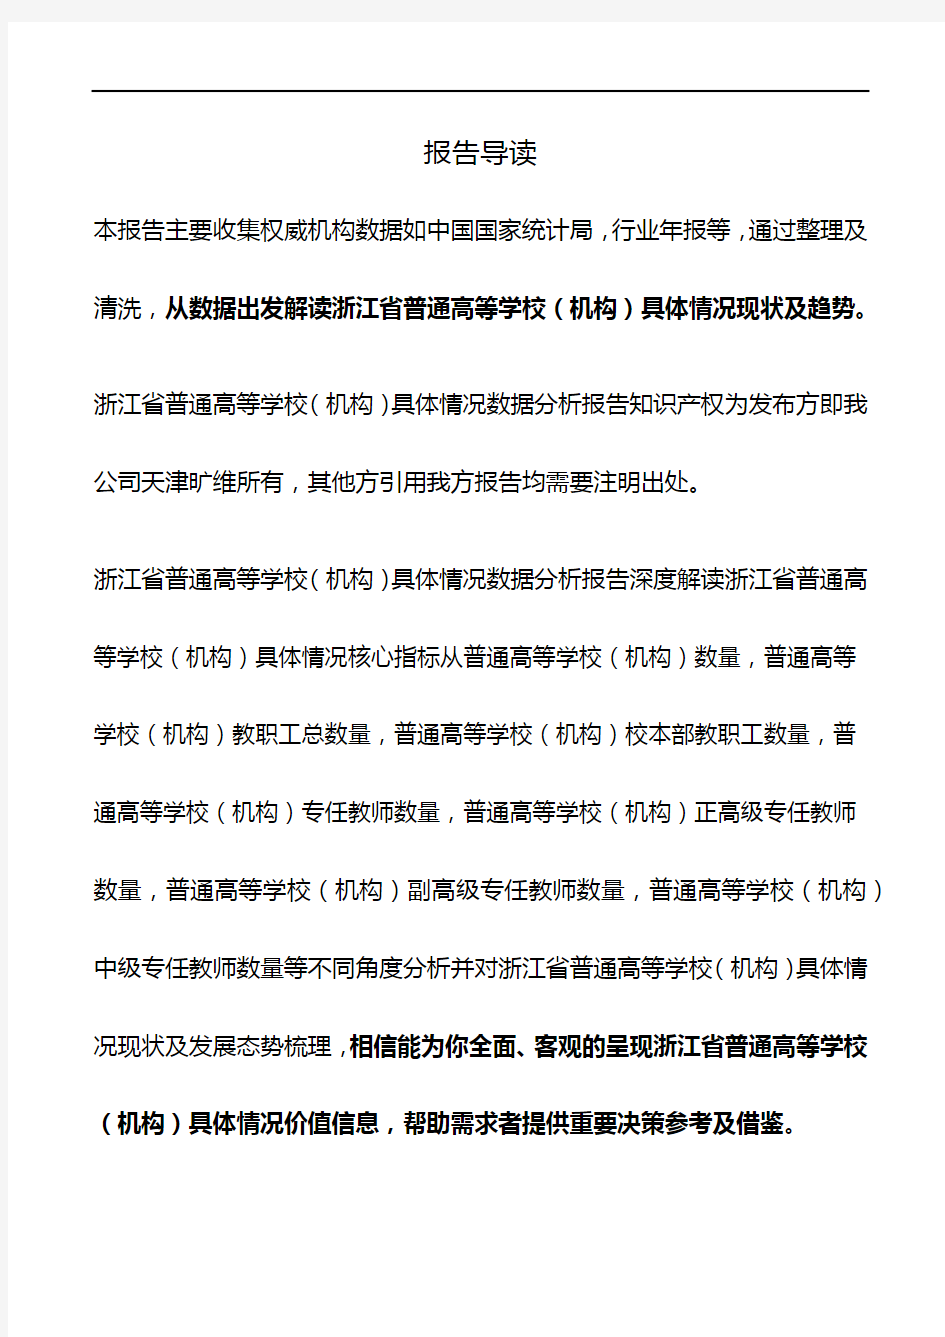 浙江省普通高等学校(机构)具体情况3年数据分析报告2019版